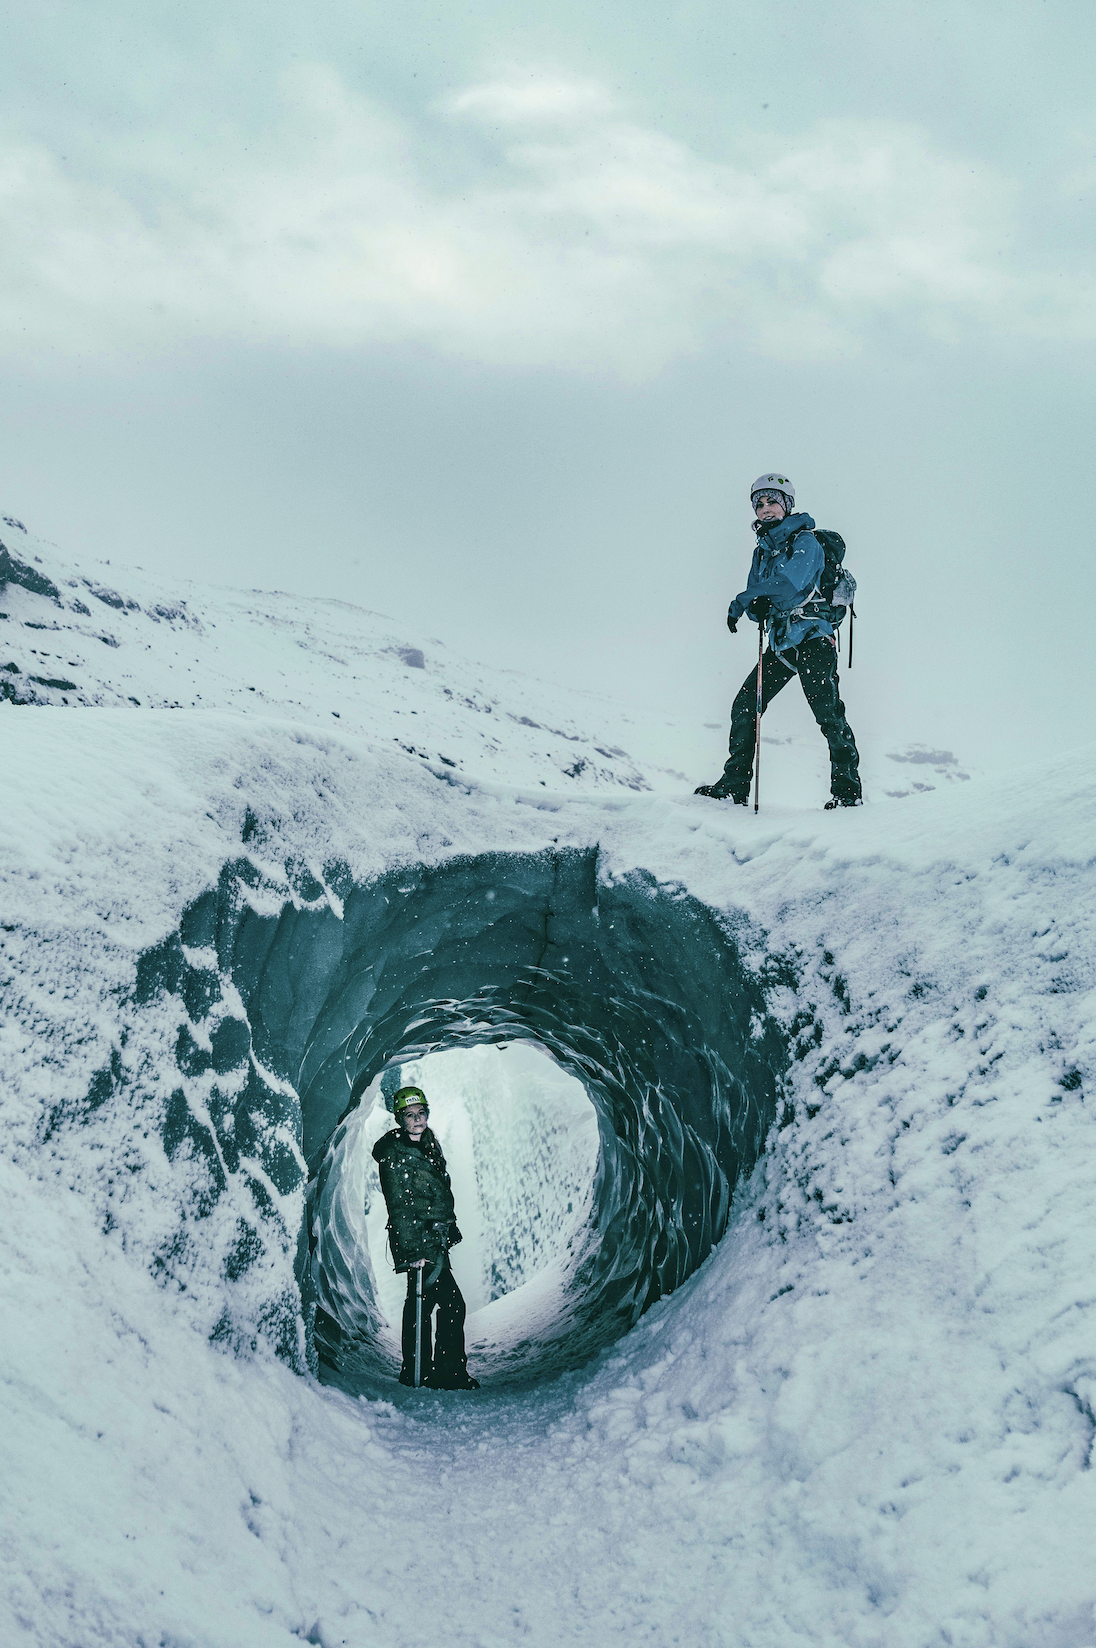 Gletscherwanderung auf dem Sólheimajökull | Moderat